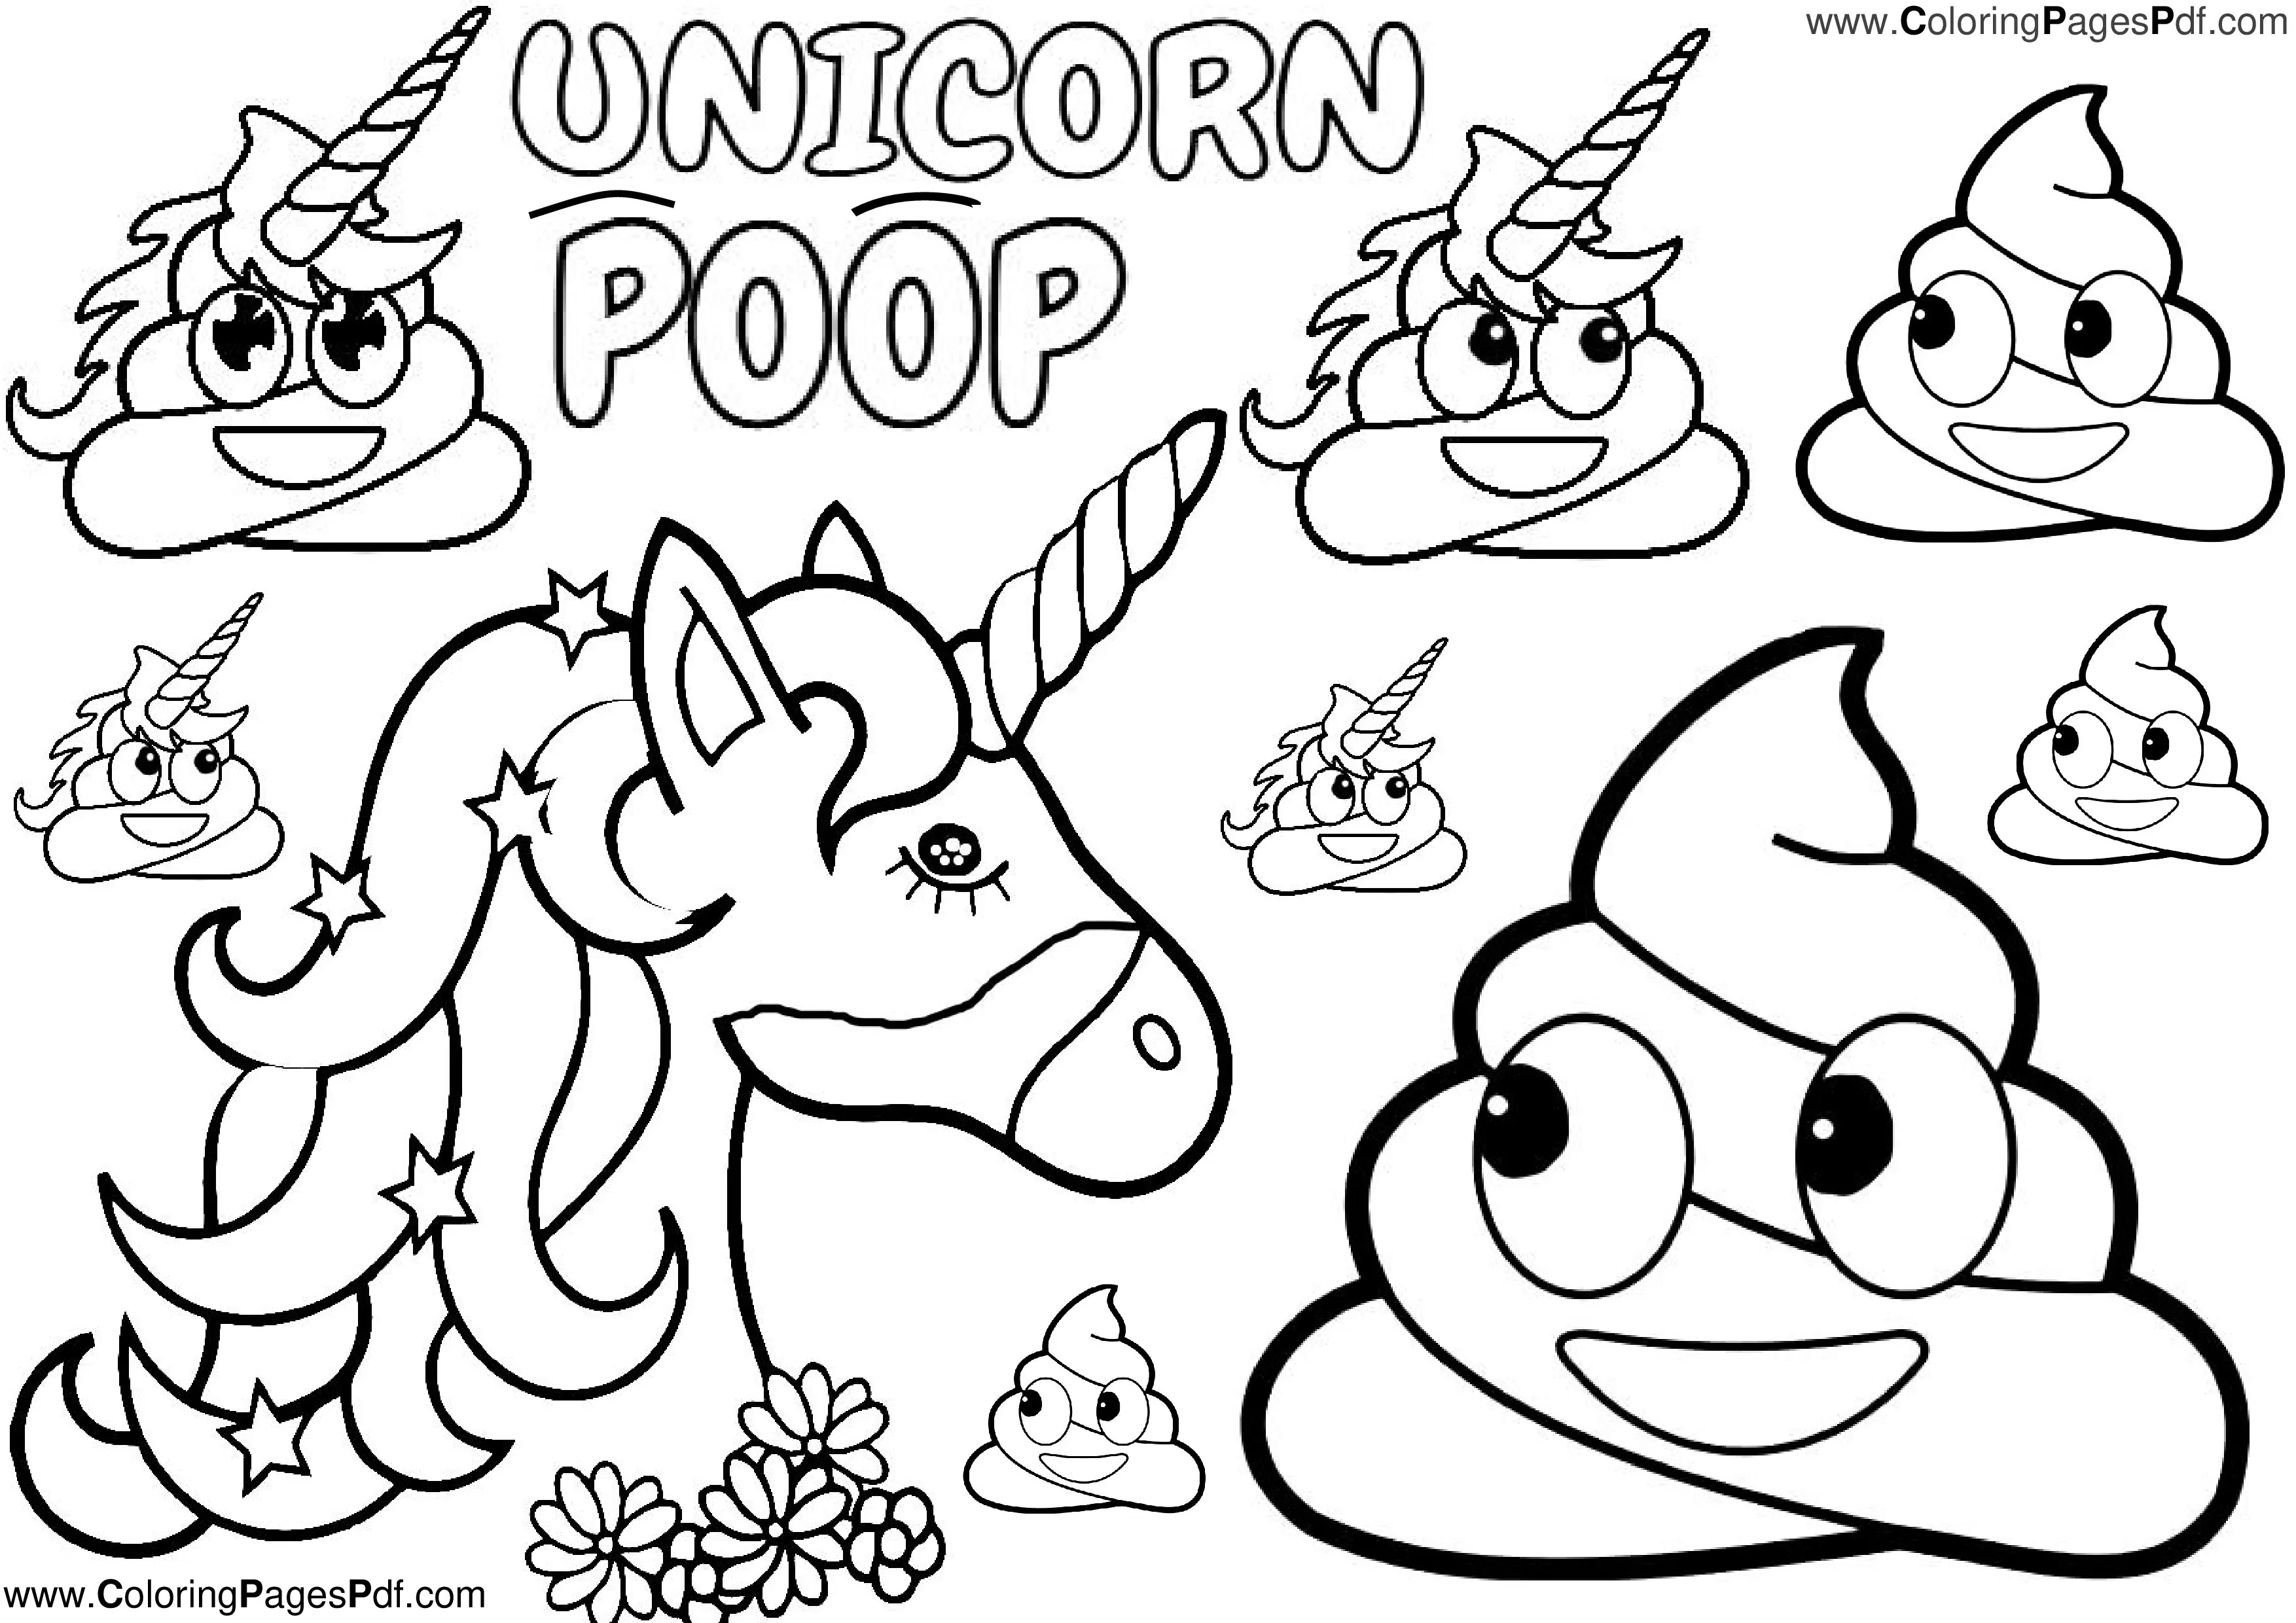 Unicorn poop emoji coloring pages